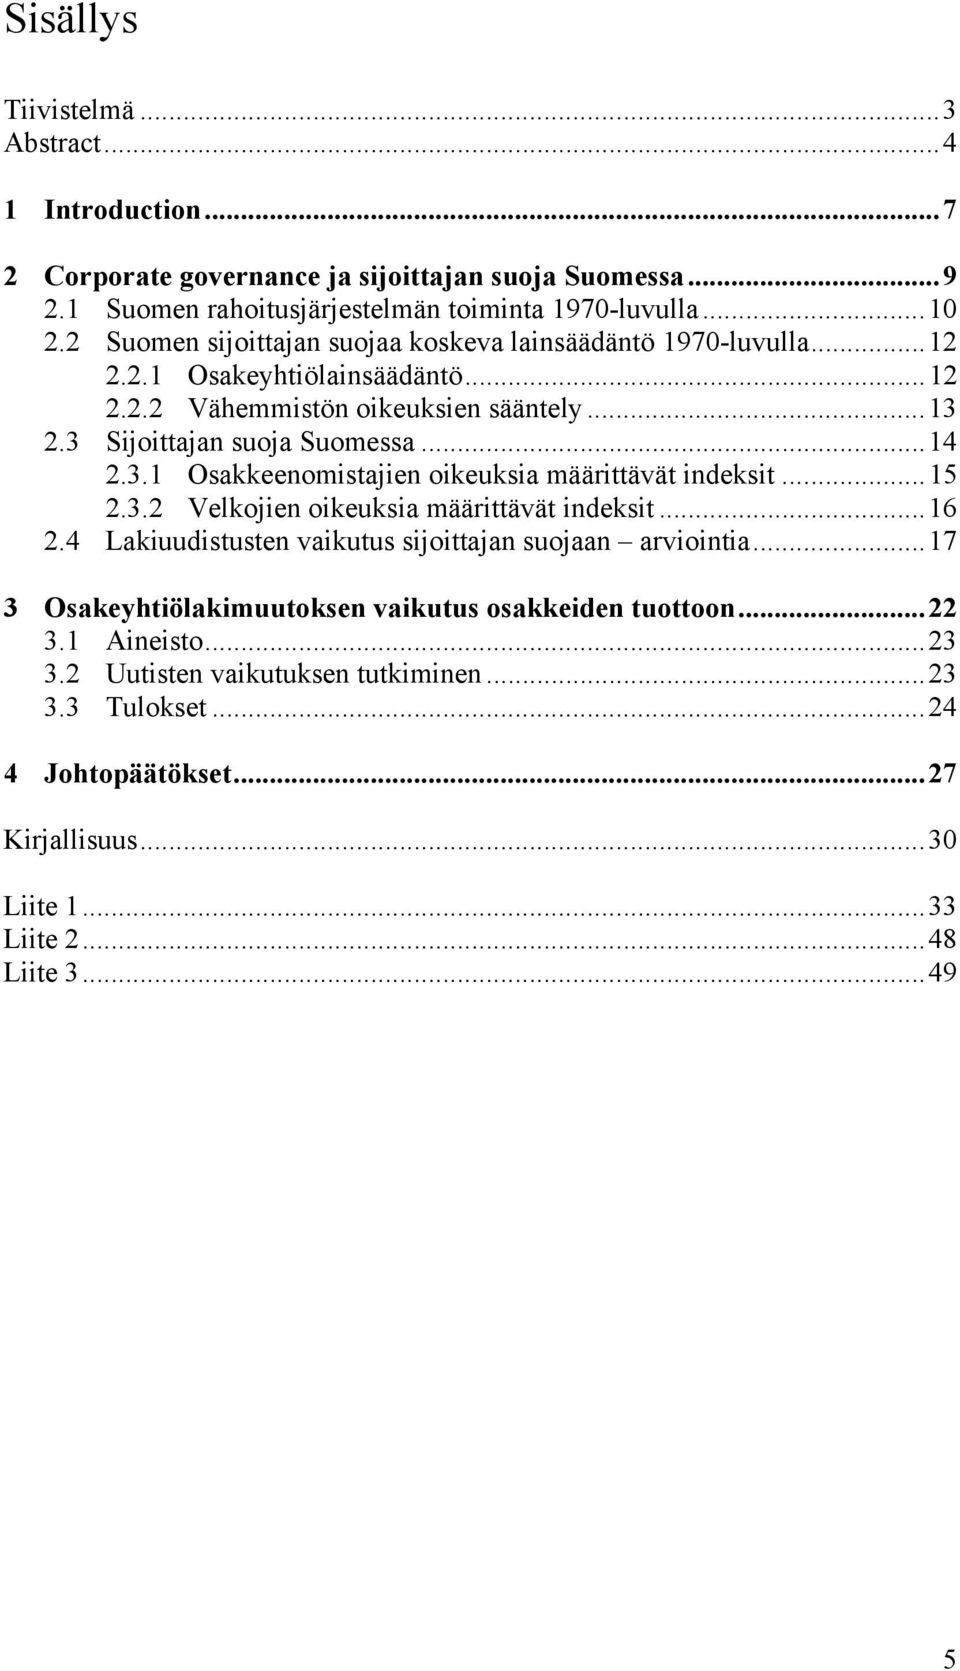 2.3 Sijoittajan suoja Suomessa...14 2.3.1 Osakkeenomistajien oikeuksia määrittävät indeksit...15 2.3.2 Velkojien oikeuksia määrittävät indeksit...16 2.